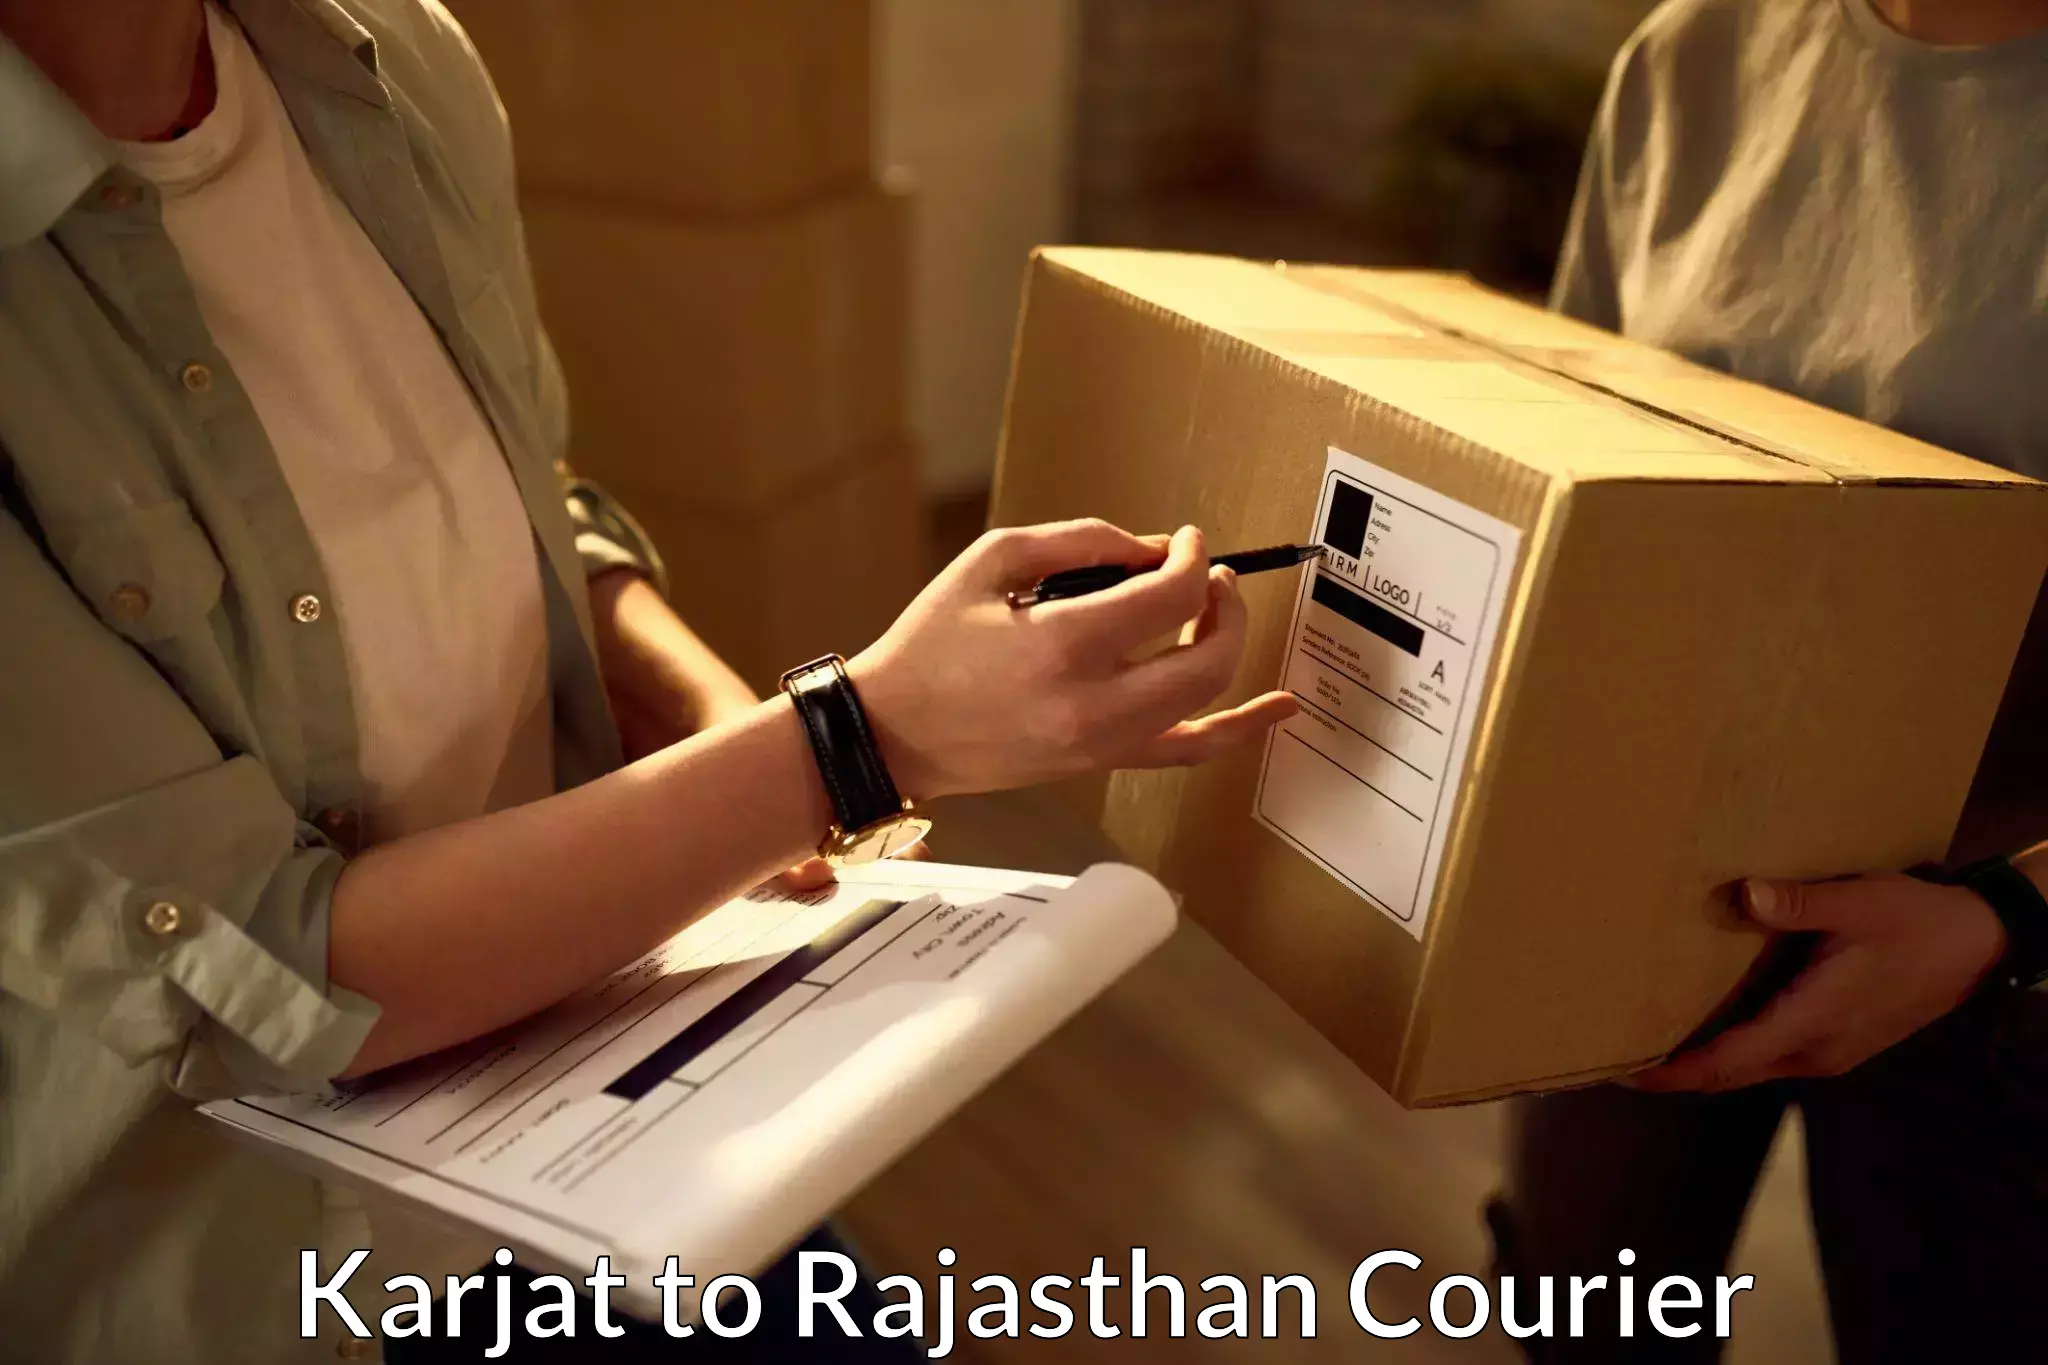 Easy return solutions Karjat to Parbatsar